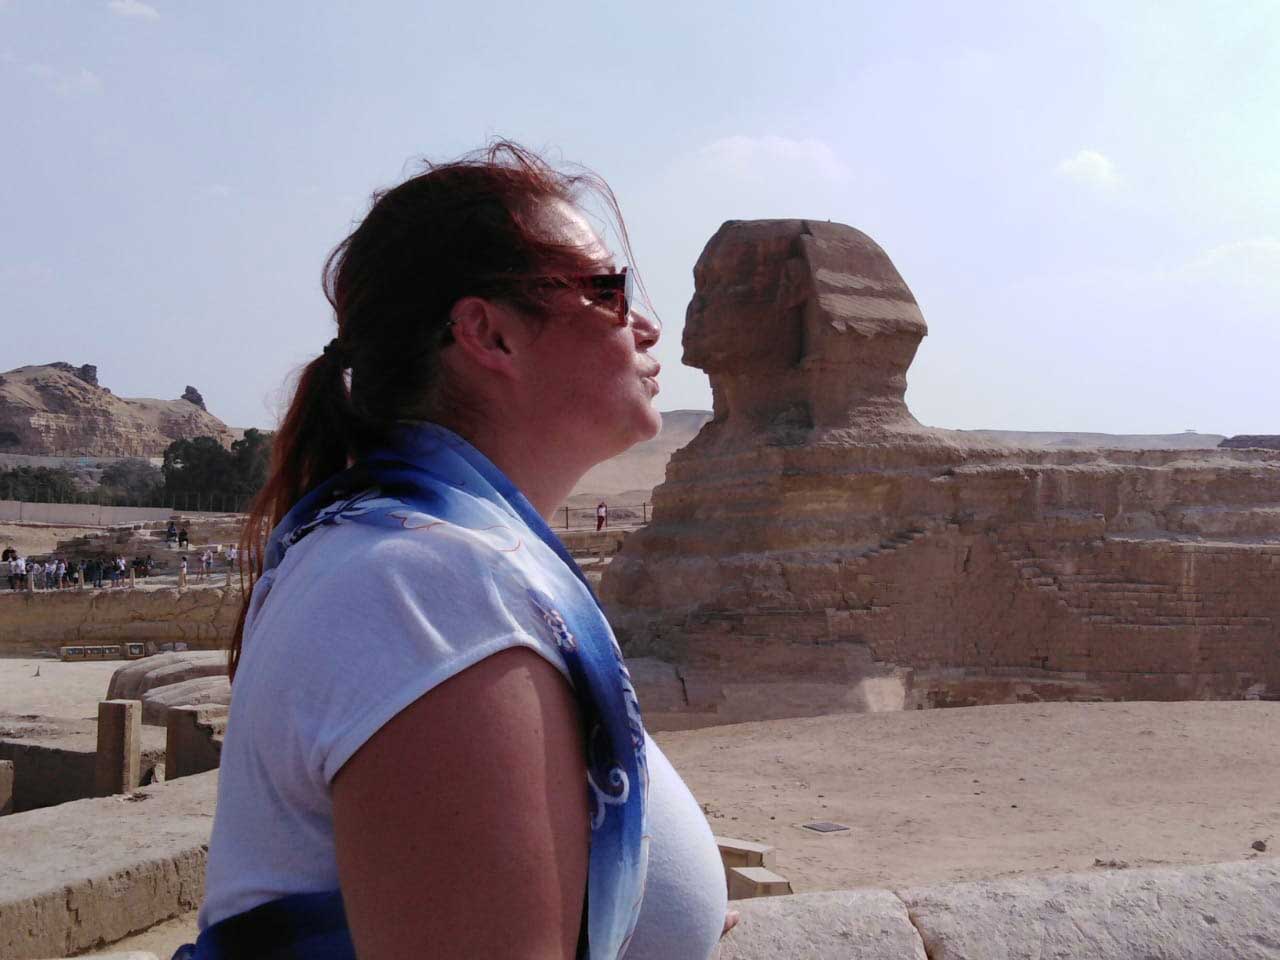 Ist es sicher, alleine als Frau nach Ägypten zu reisen?